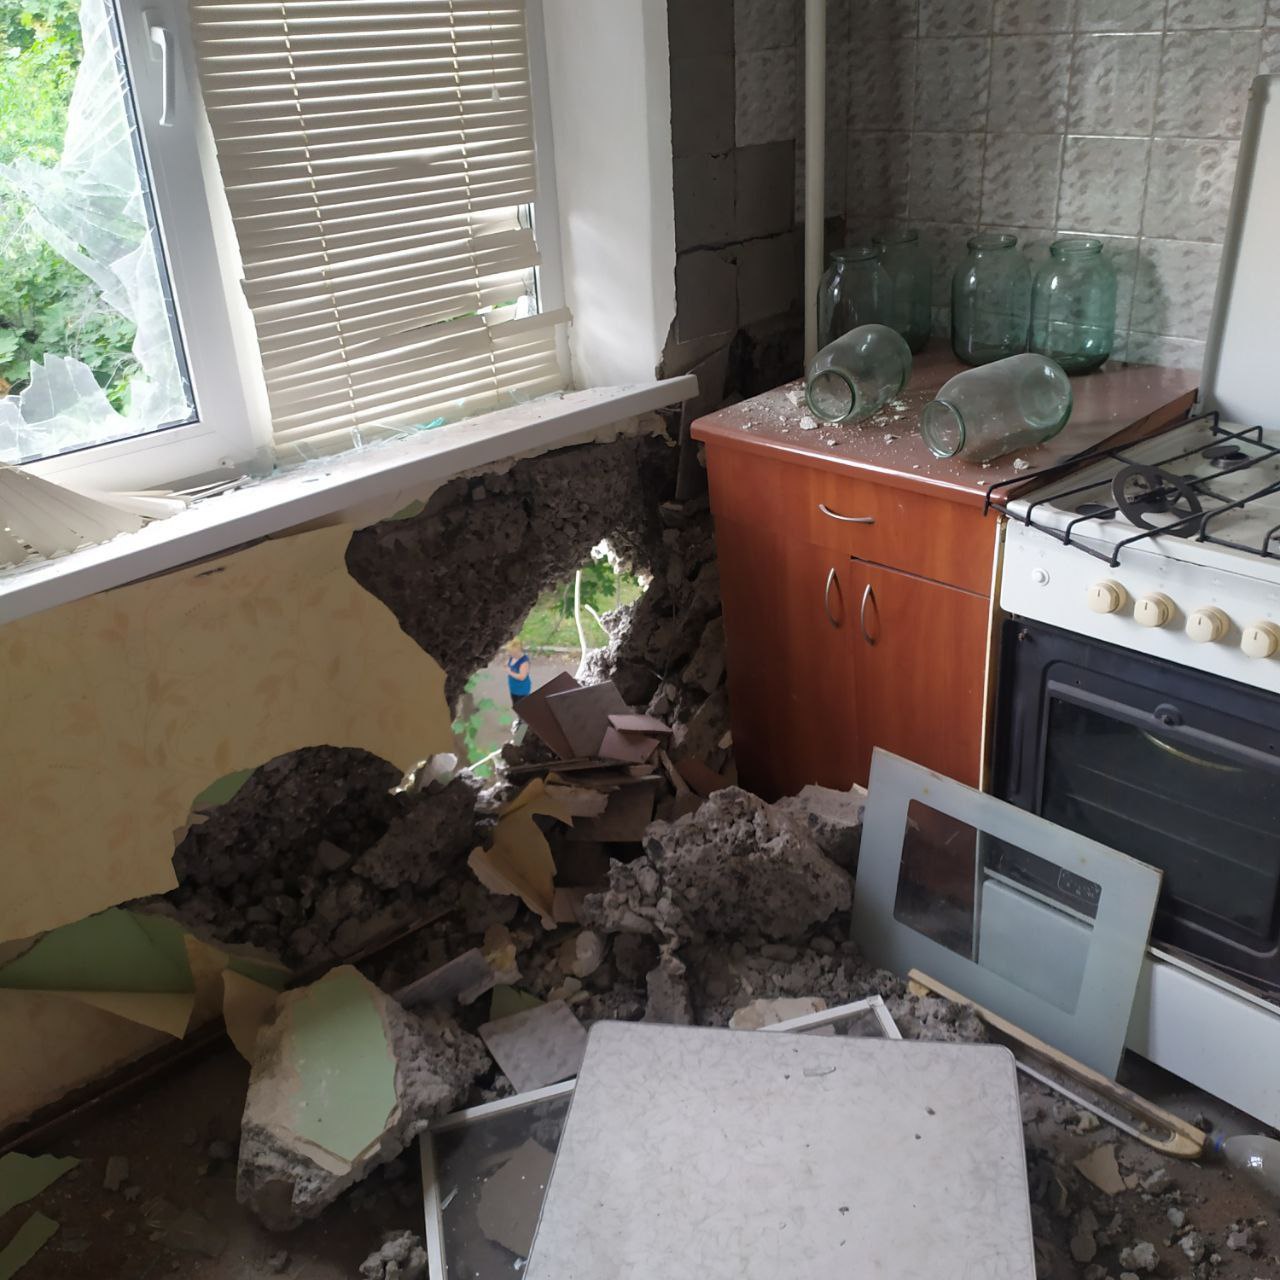 Квартира № 55 дома № 27 по улице Кирова в Горловке повреждённая обстрелом ВСУ